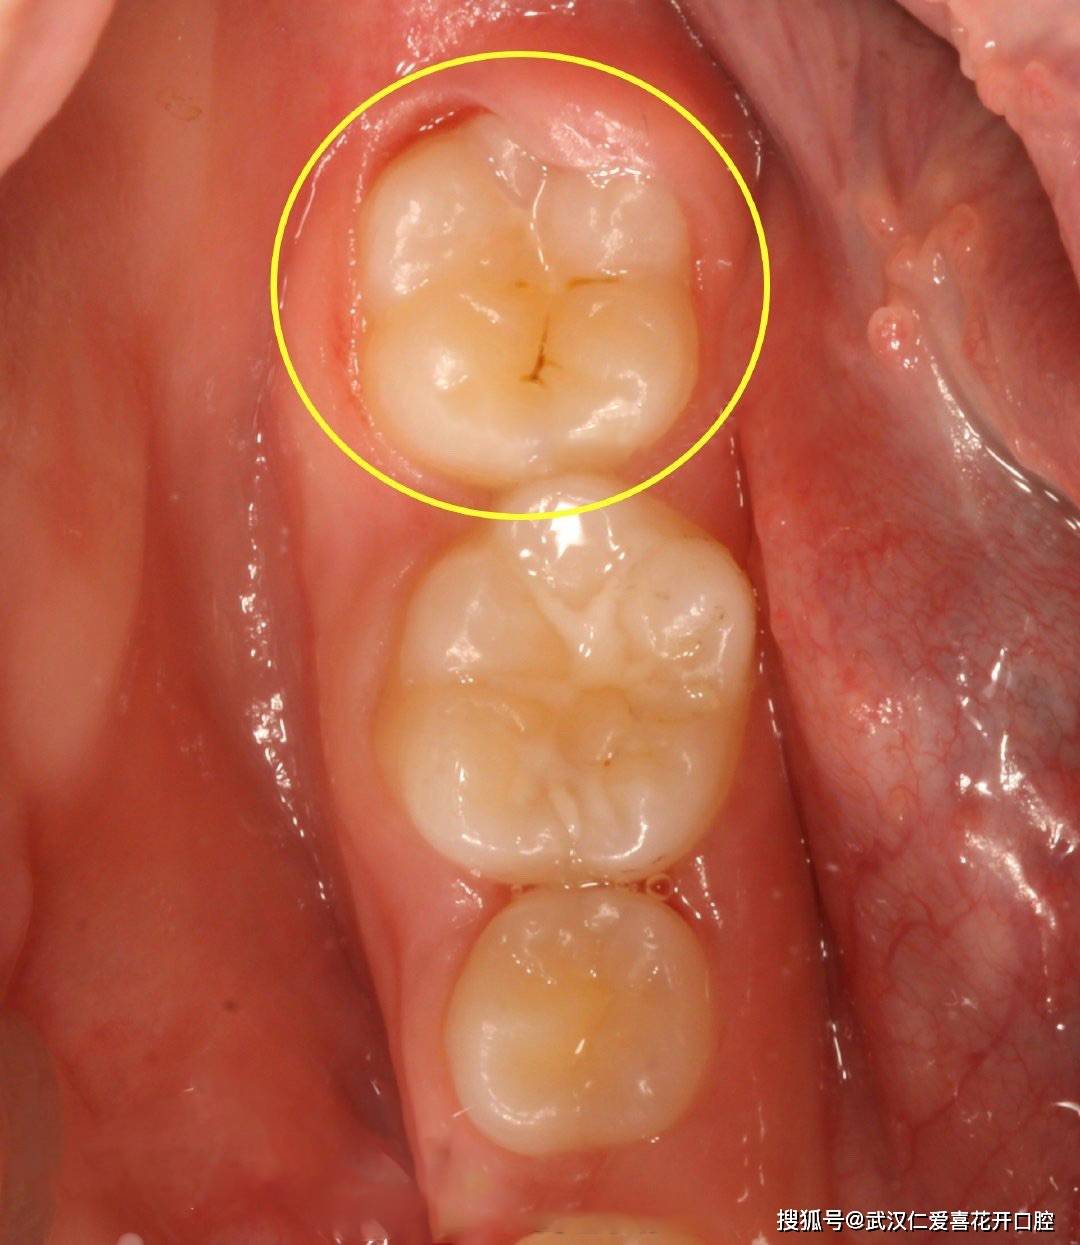 如果你的蛀牙到这种程度了,就不能靠补牙拯救了!